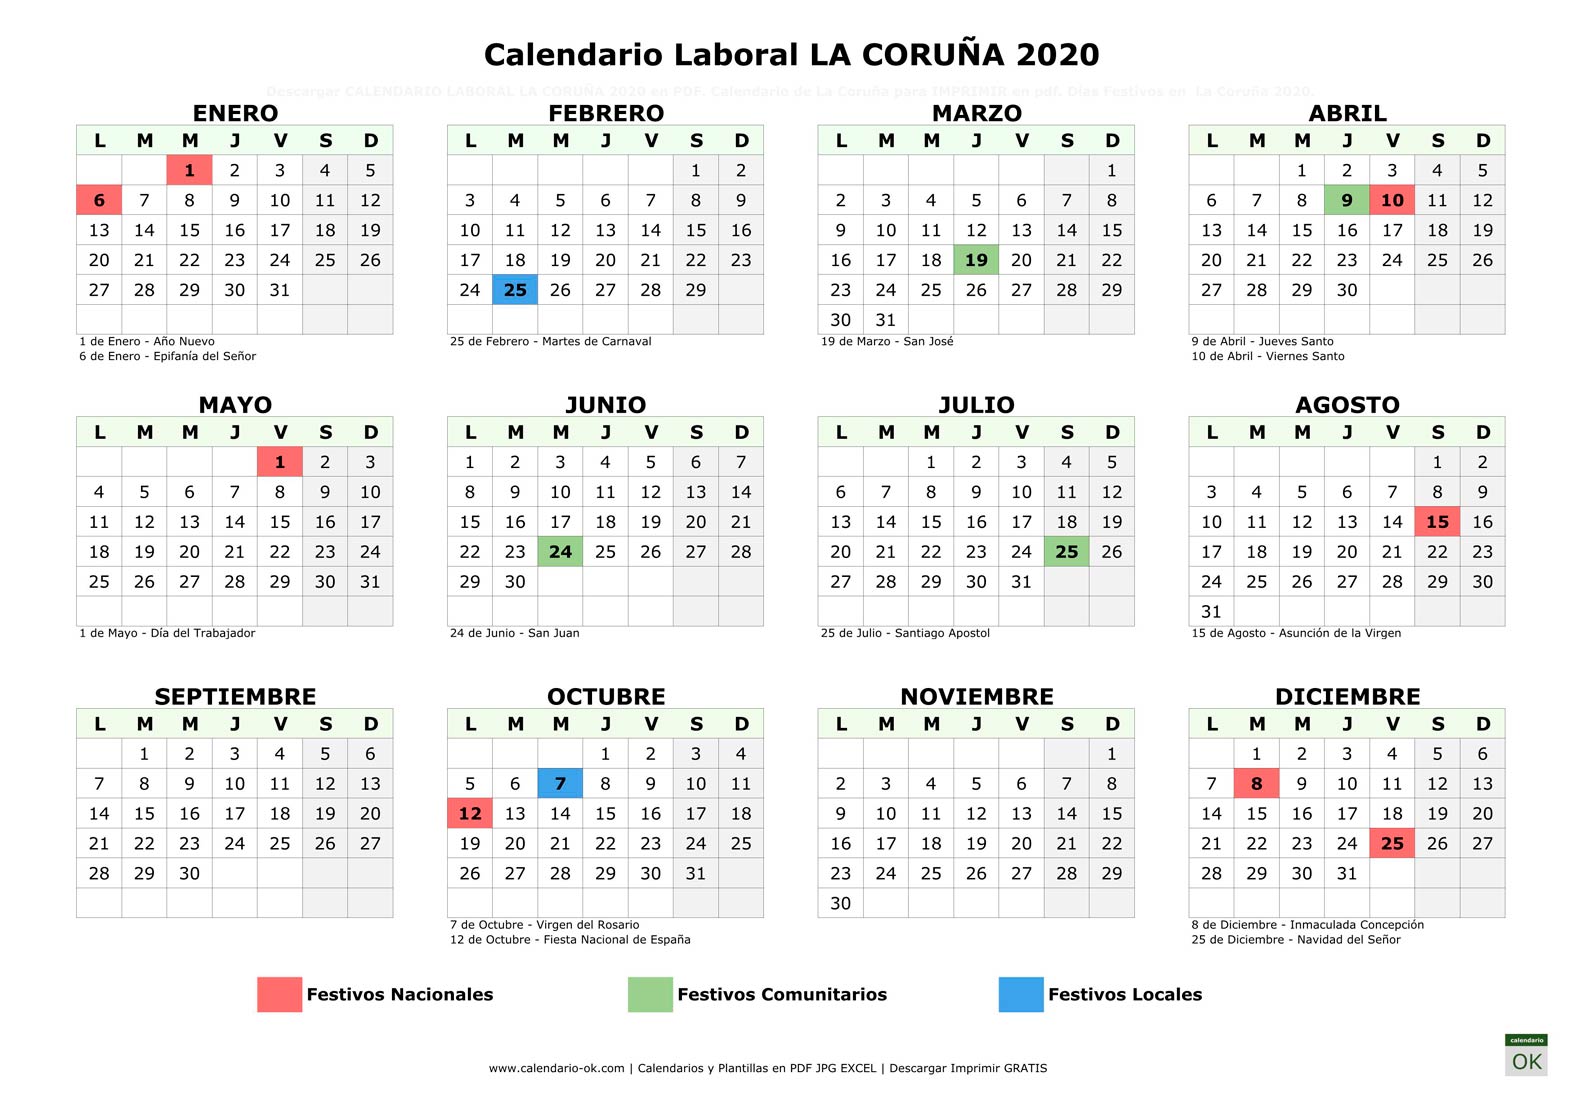 Calendario Laboral LA CORUÑA 2020 horizontal